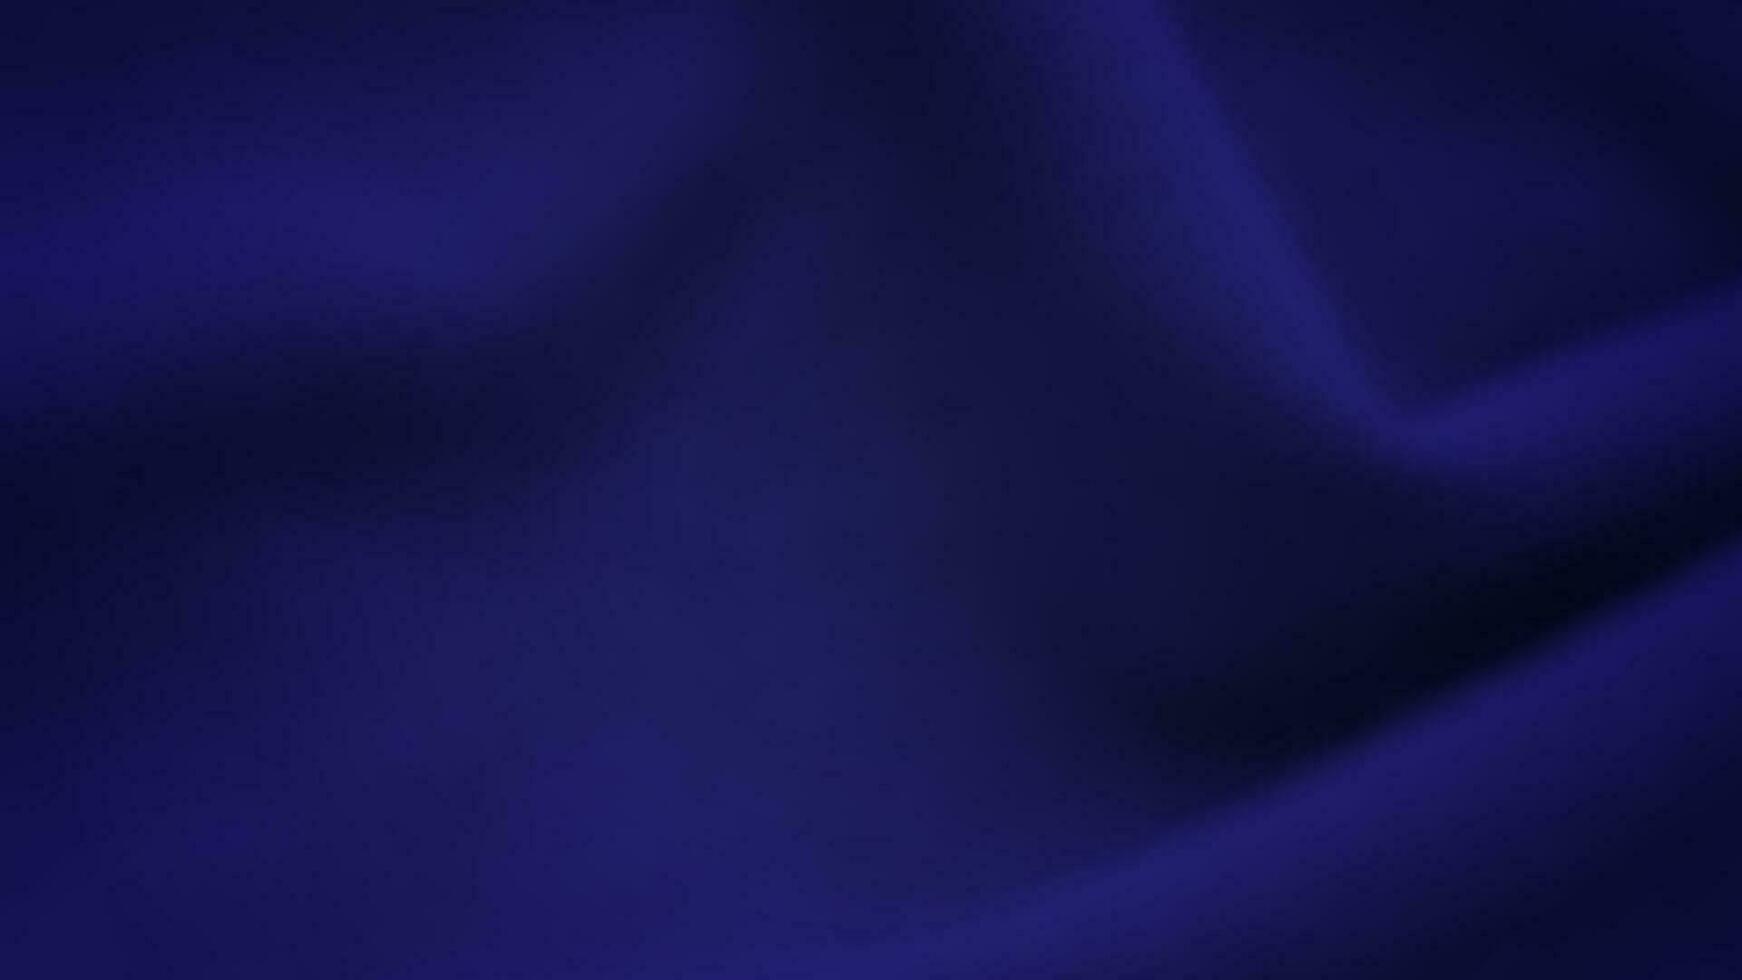 abstrakt Hintergrund mit zerknittert Tuch. dunkel Blau realistisch Seide Textur mit leeren Raum. Vektor Illustration